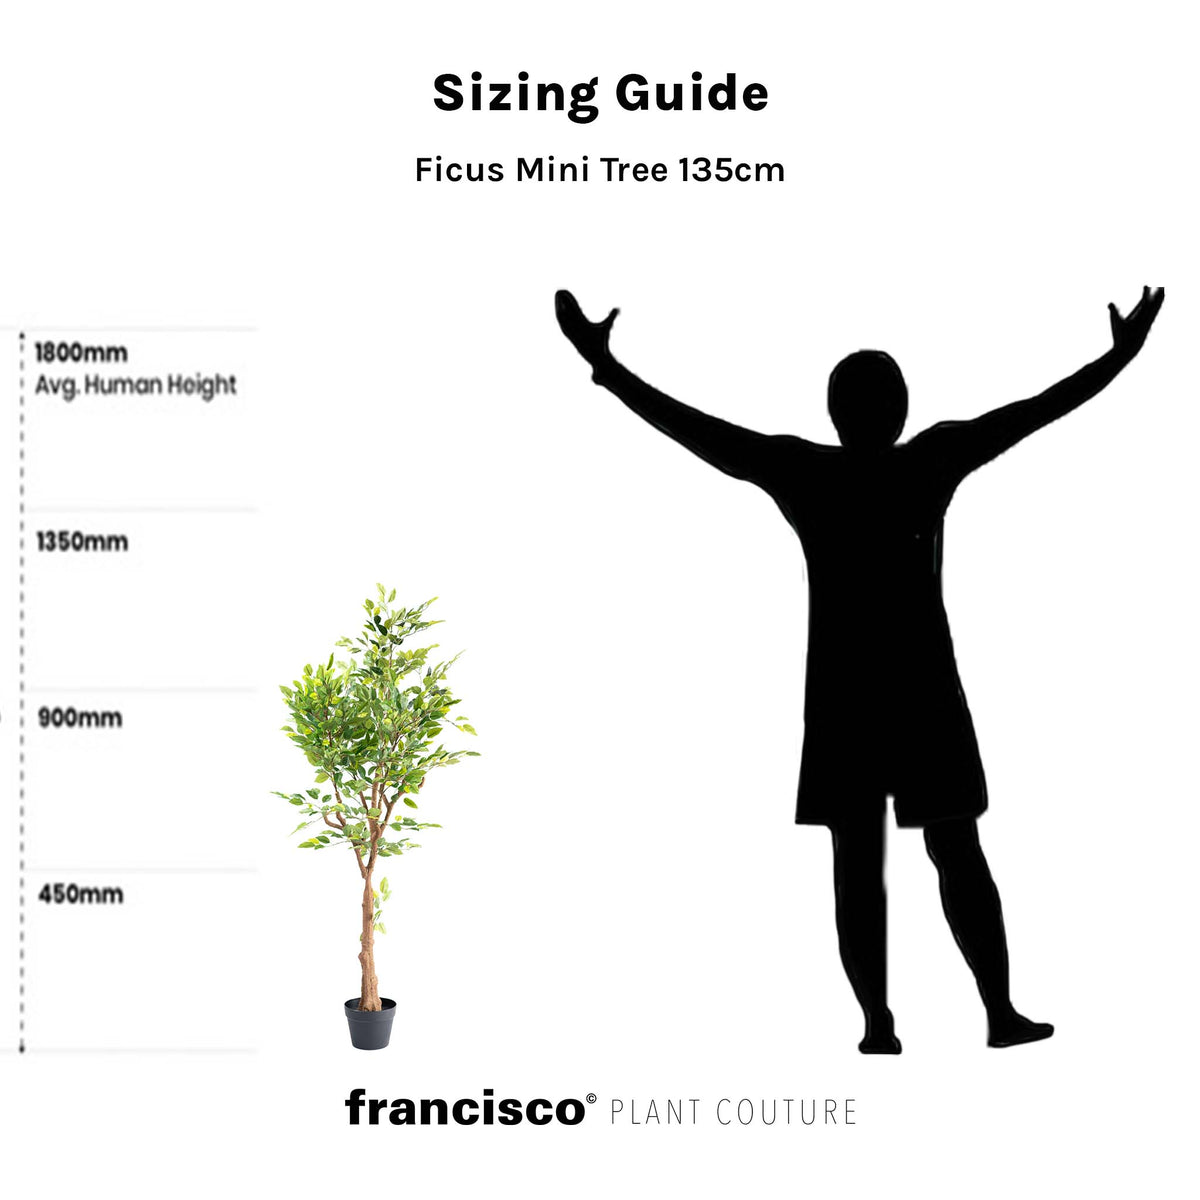 Ficus Mini Tree 135cm